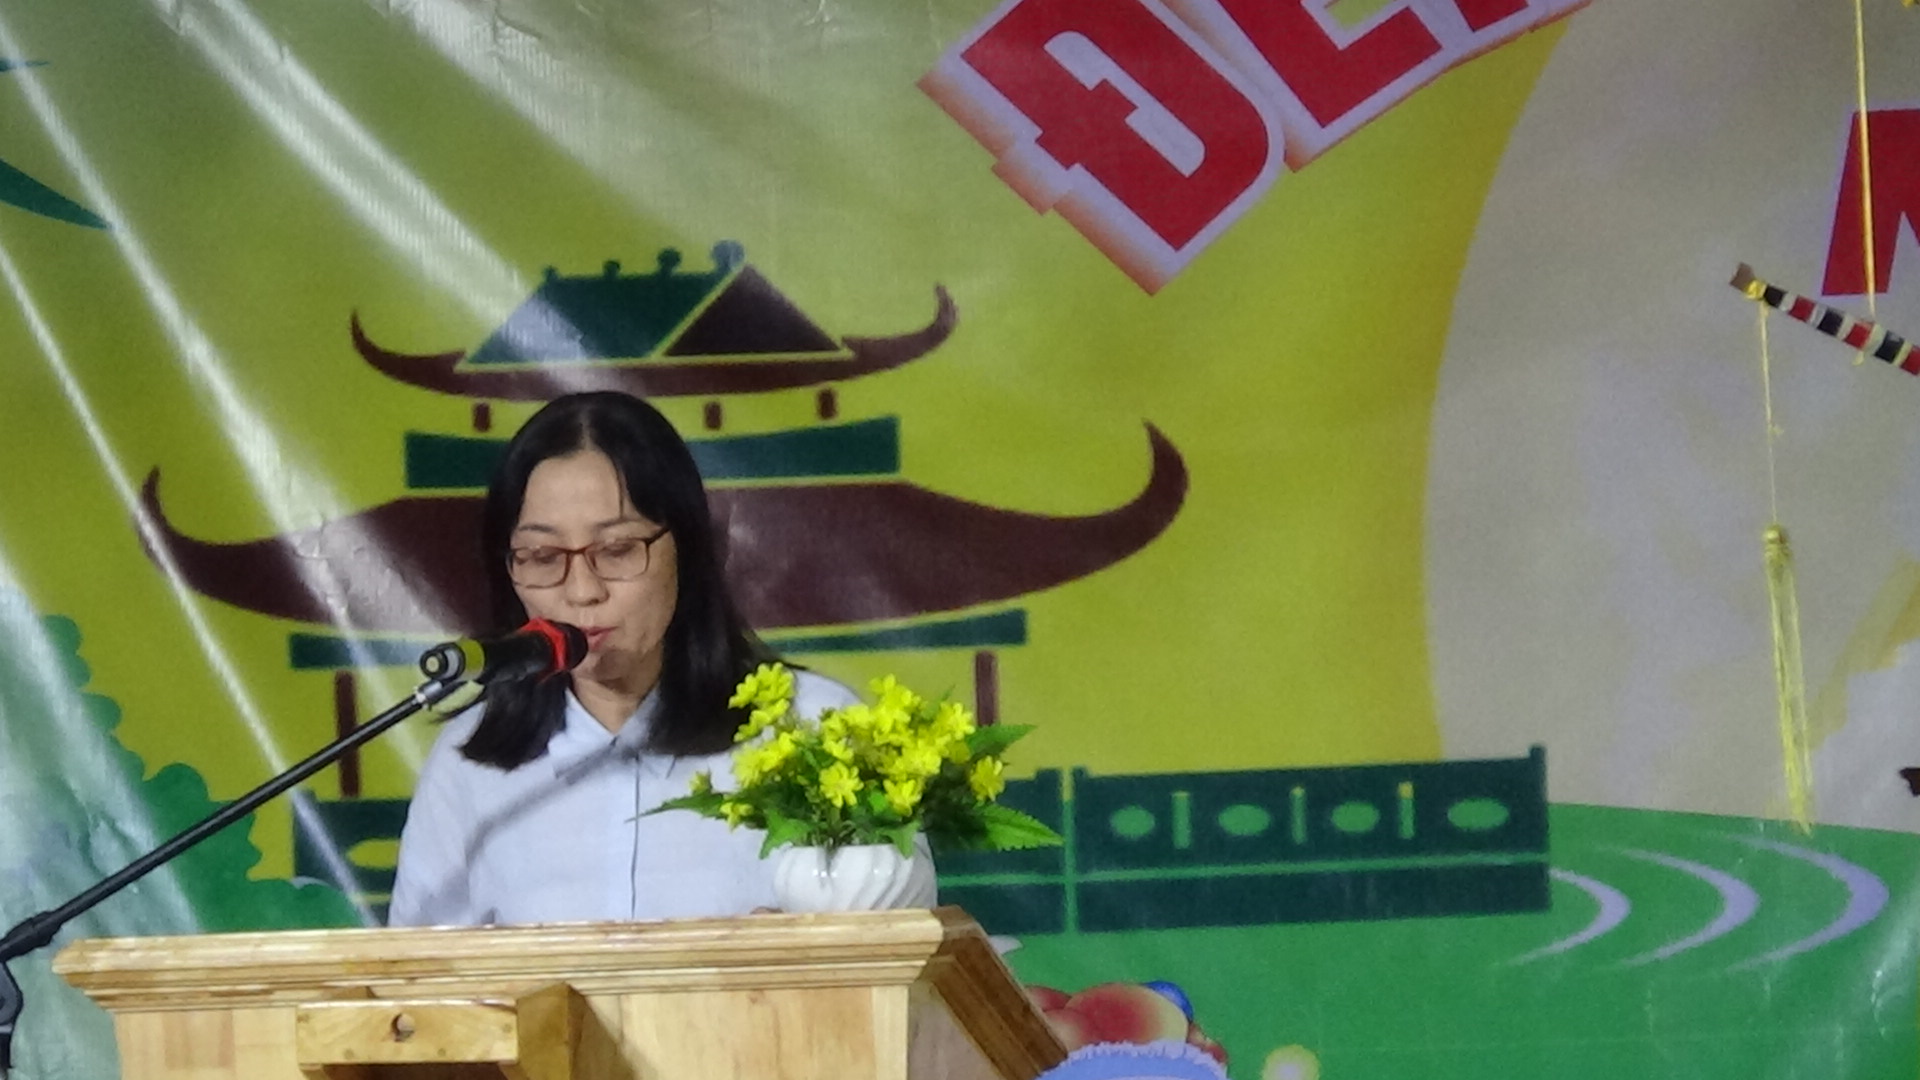 Ủy ban nhân dân huyện Krông Pắc Phối hợp UBND xã Ea Yiêng tổ chức các hoạt động vui Tết Trung thu và Đêm hội trăng rằm cho thiếu nhi năm 2023